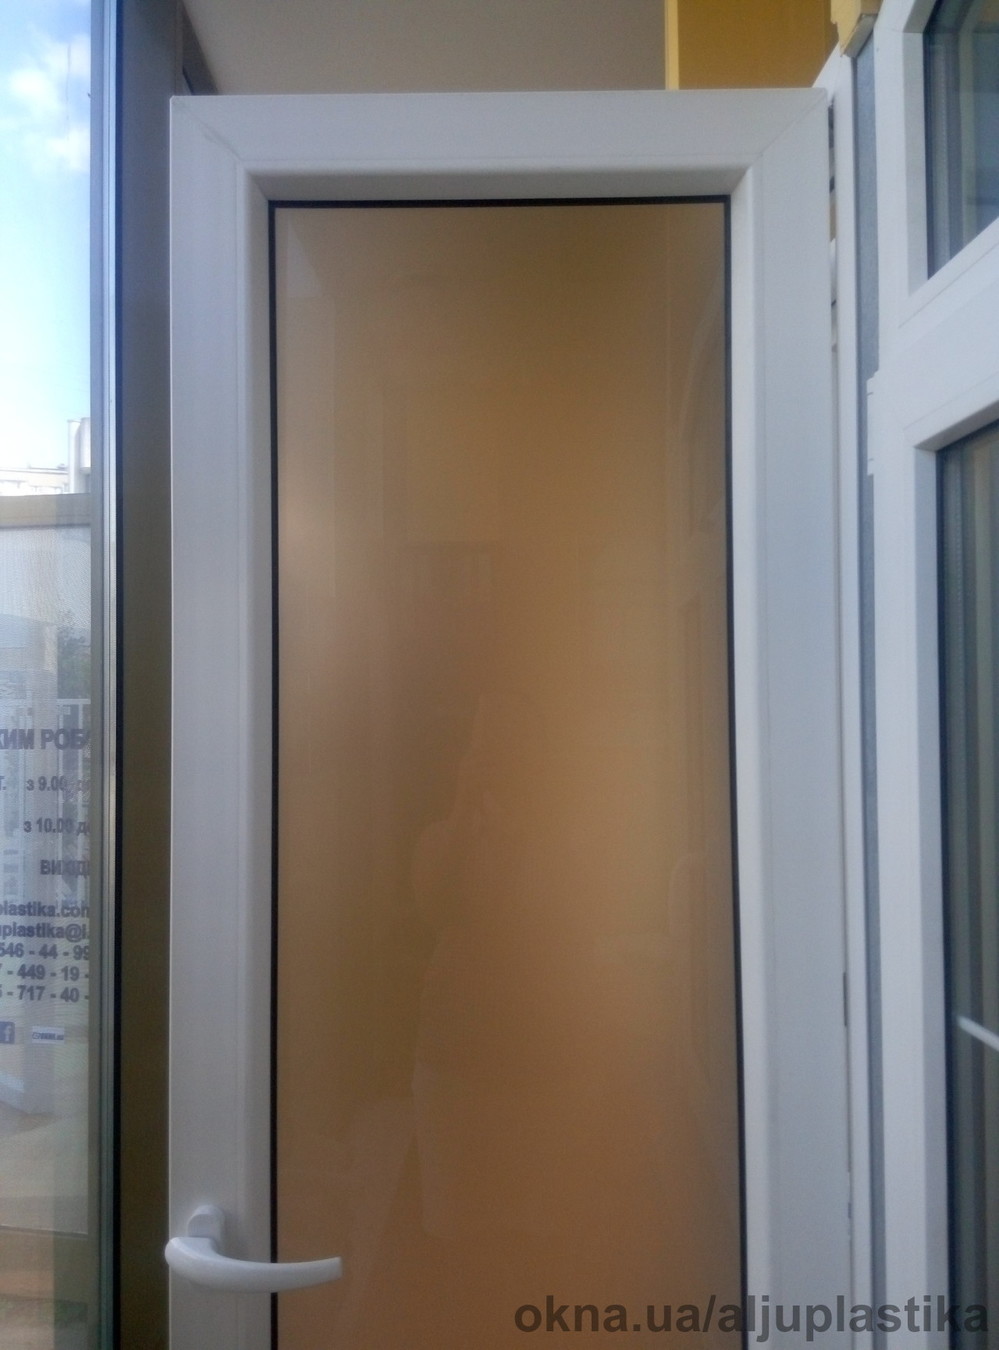 Новый образец двери со скрытой фурнитурой Maco Invisible.